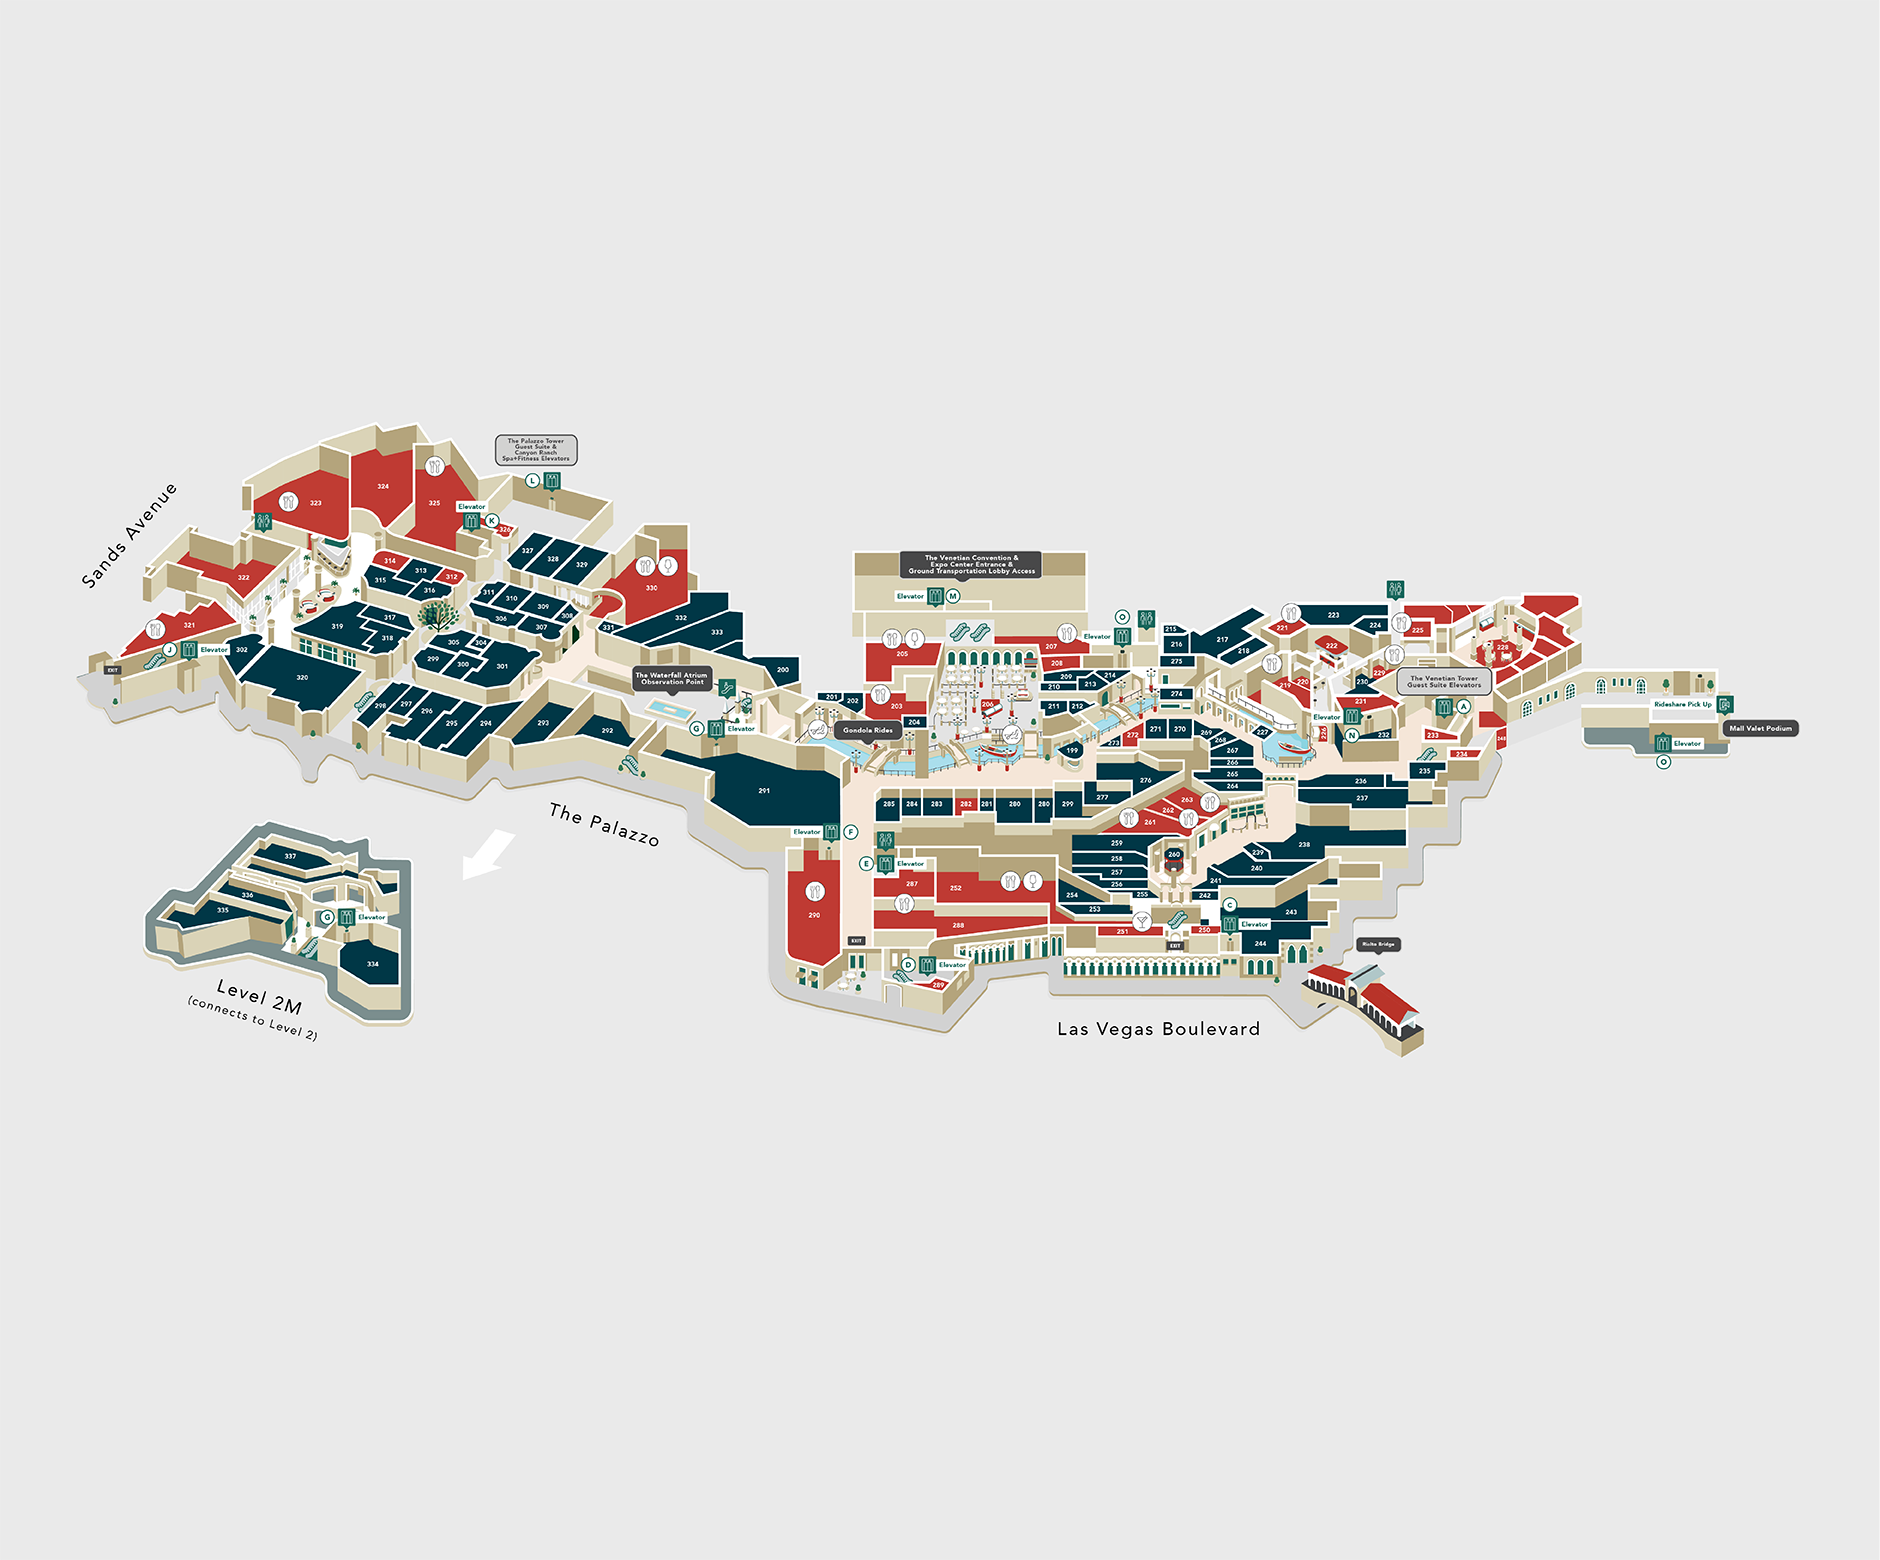 Digital Map of The Venetian Resort